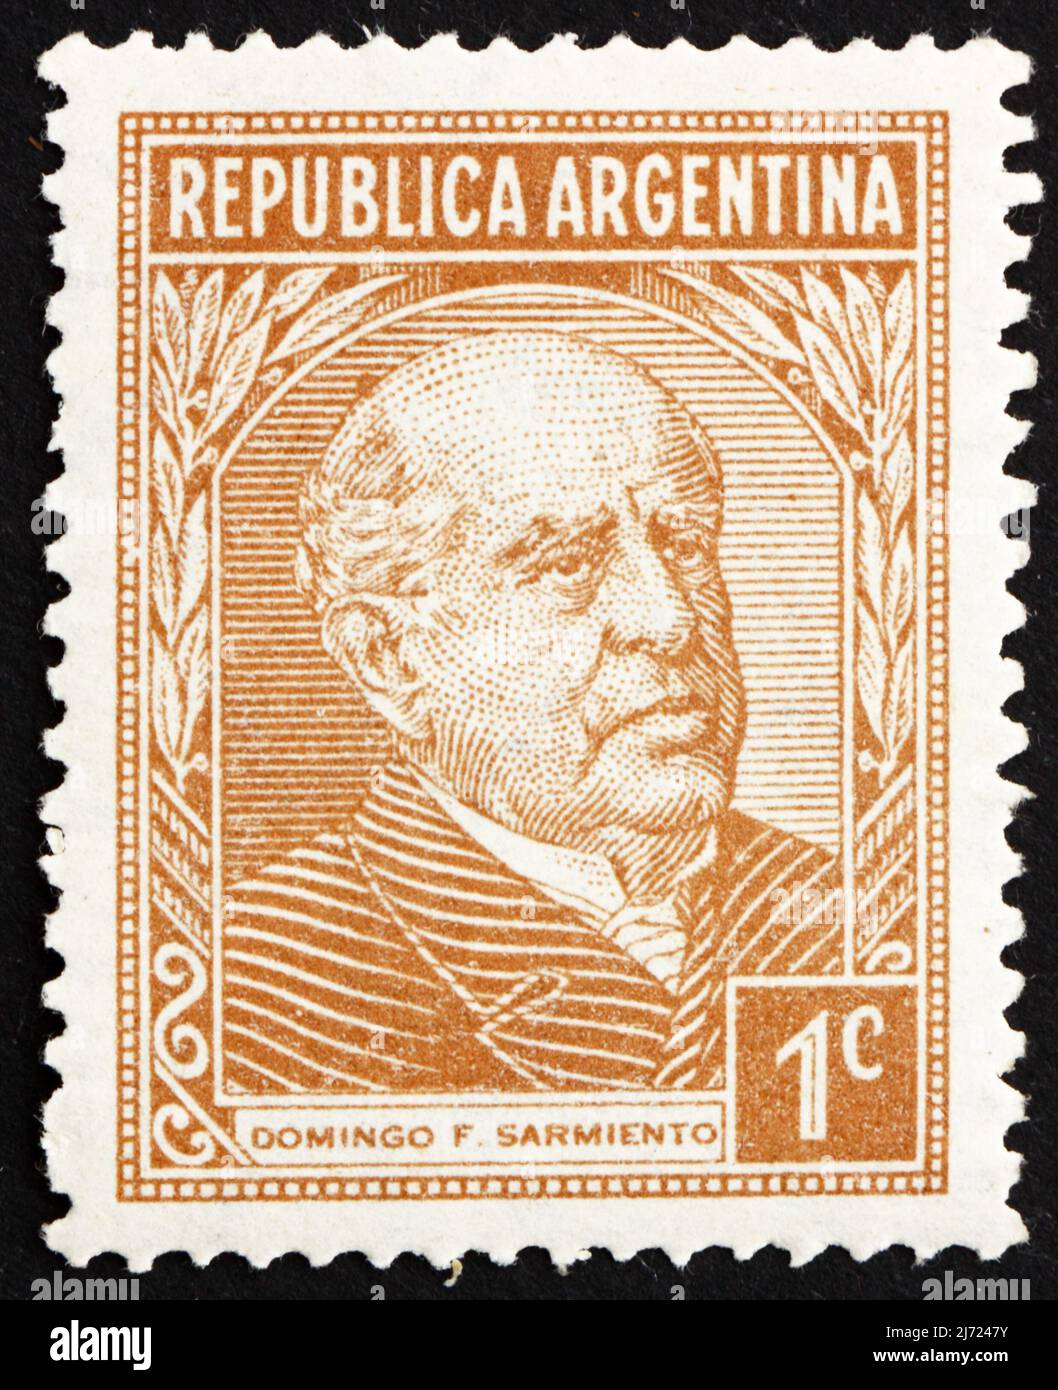 ARGENTINE - VERS 1935: Un timbre imprimé en Argentine montre Domingo  Faustino Sarmiento, 7th Président de l'Argentine, 1868 - 1874, vers 1935  Photo Stock - Alamy